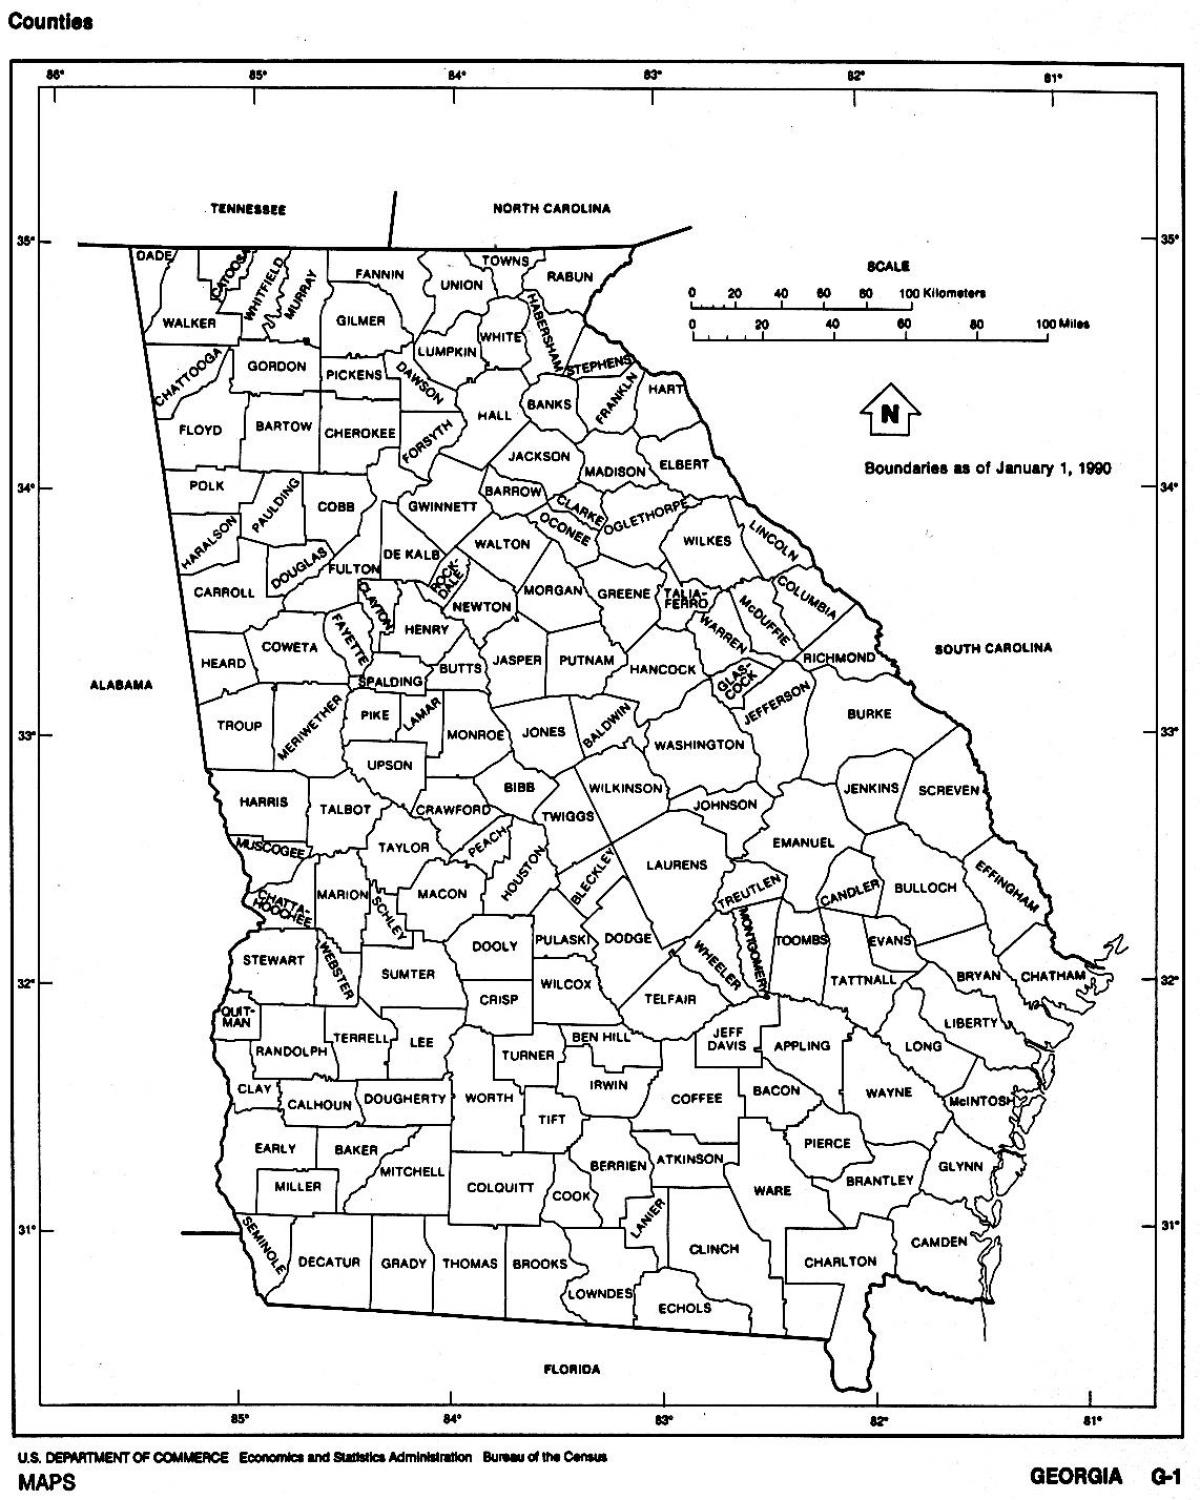 Georgia állam térkép